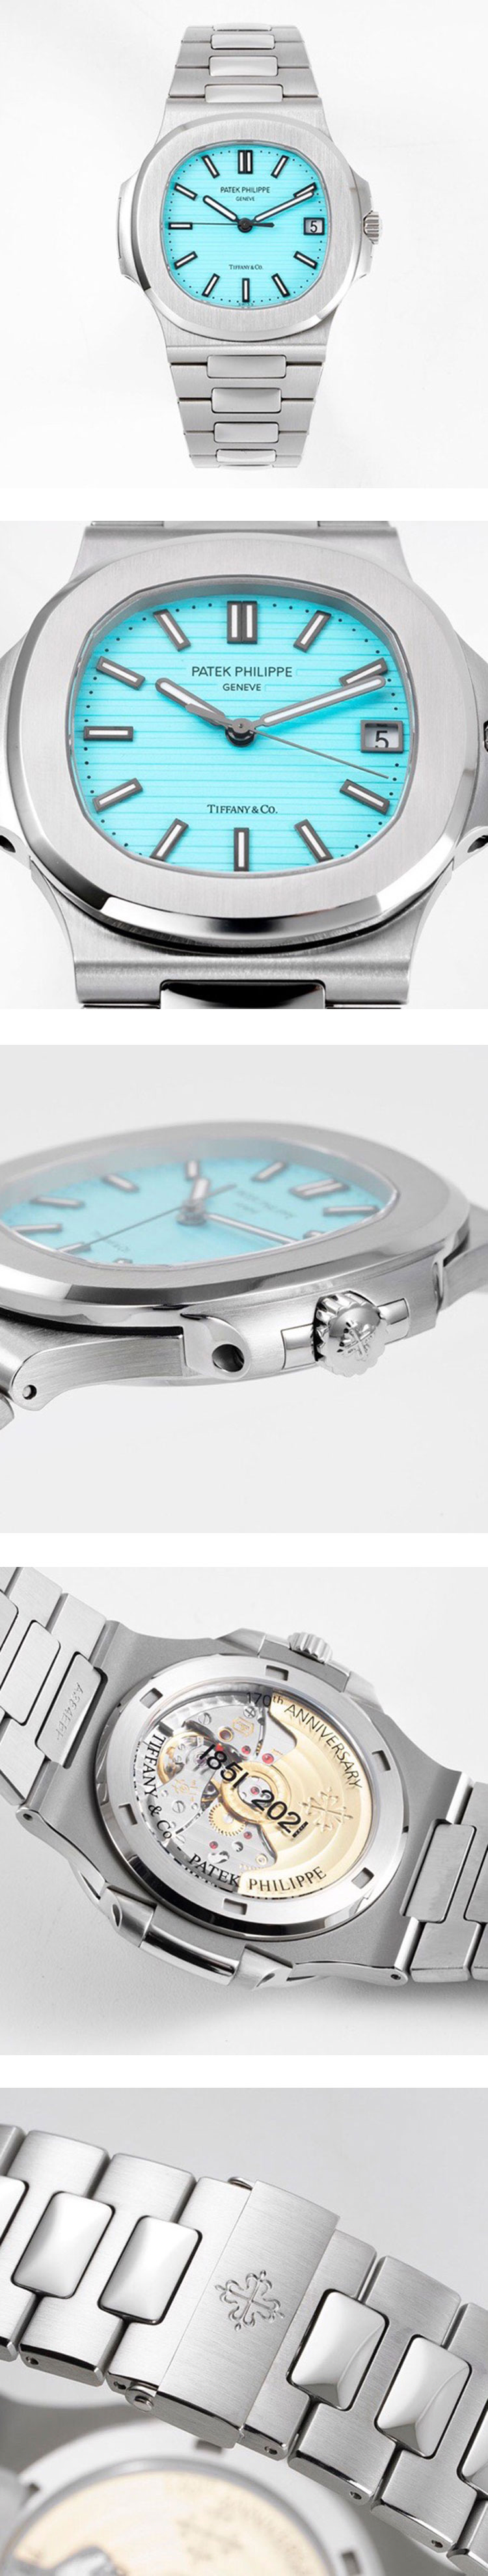 【PPF製】パテック フィリップコピー 5711/1A-018 ノーチラス ティファニーブルー “Tiffany & Co.” 高級腕時計